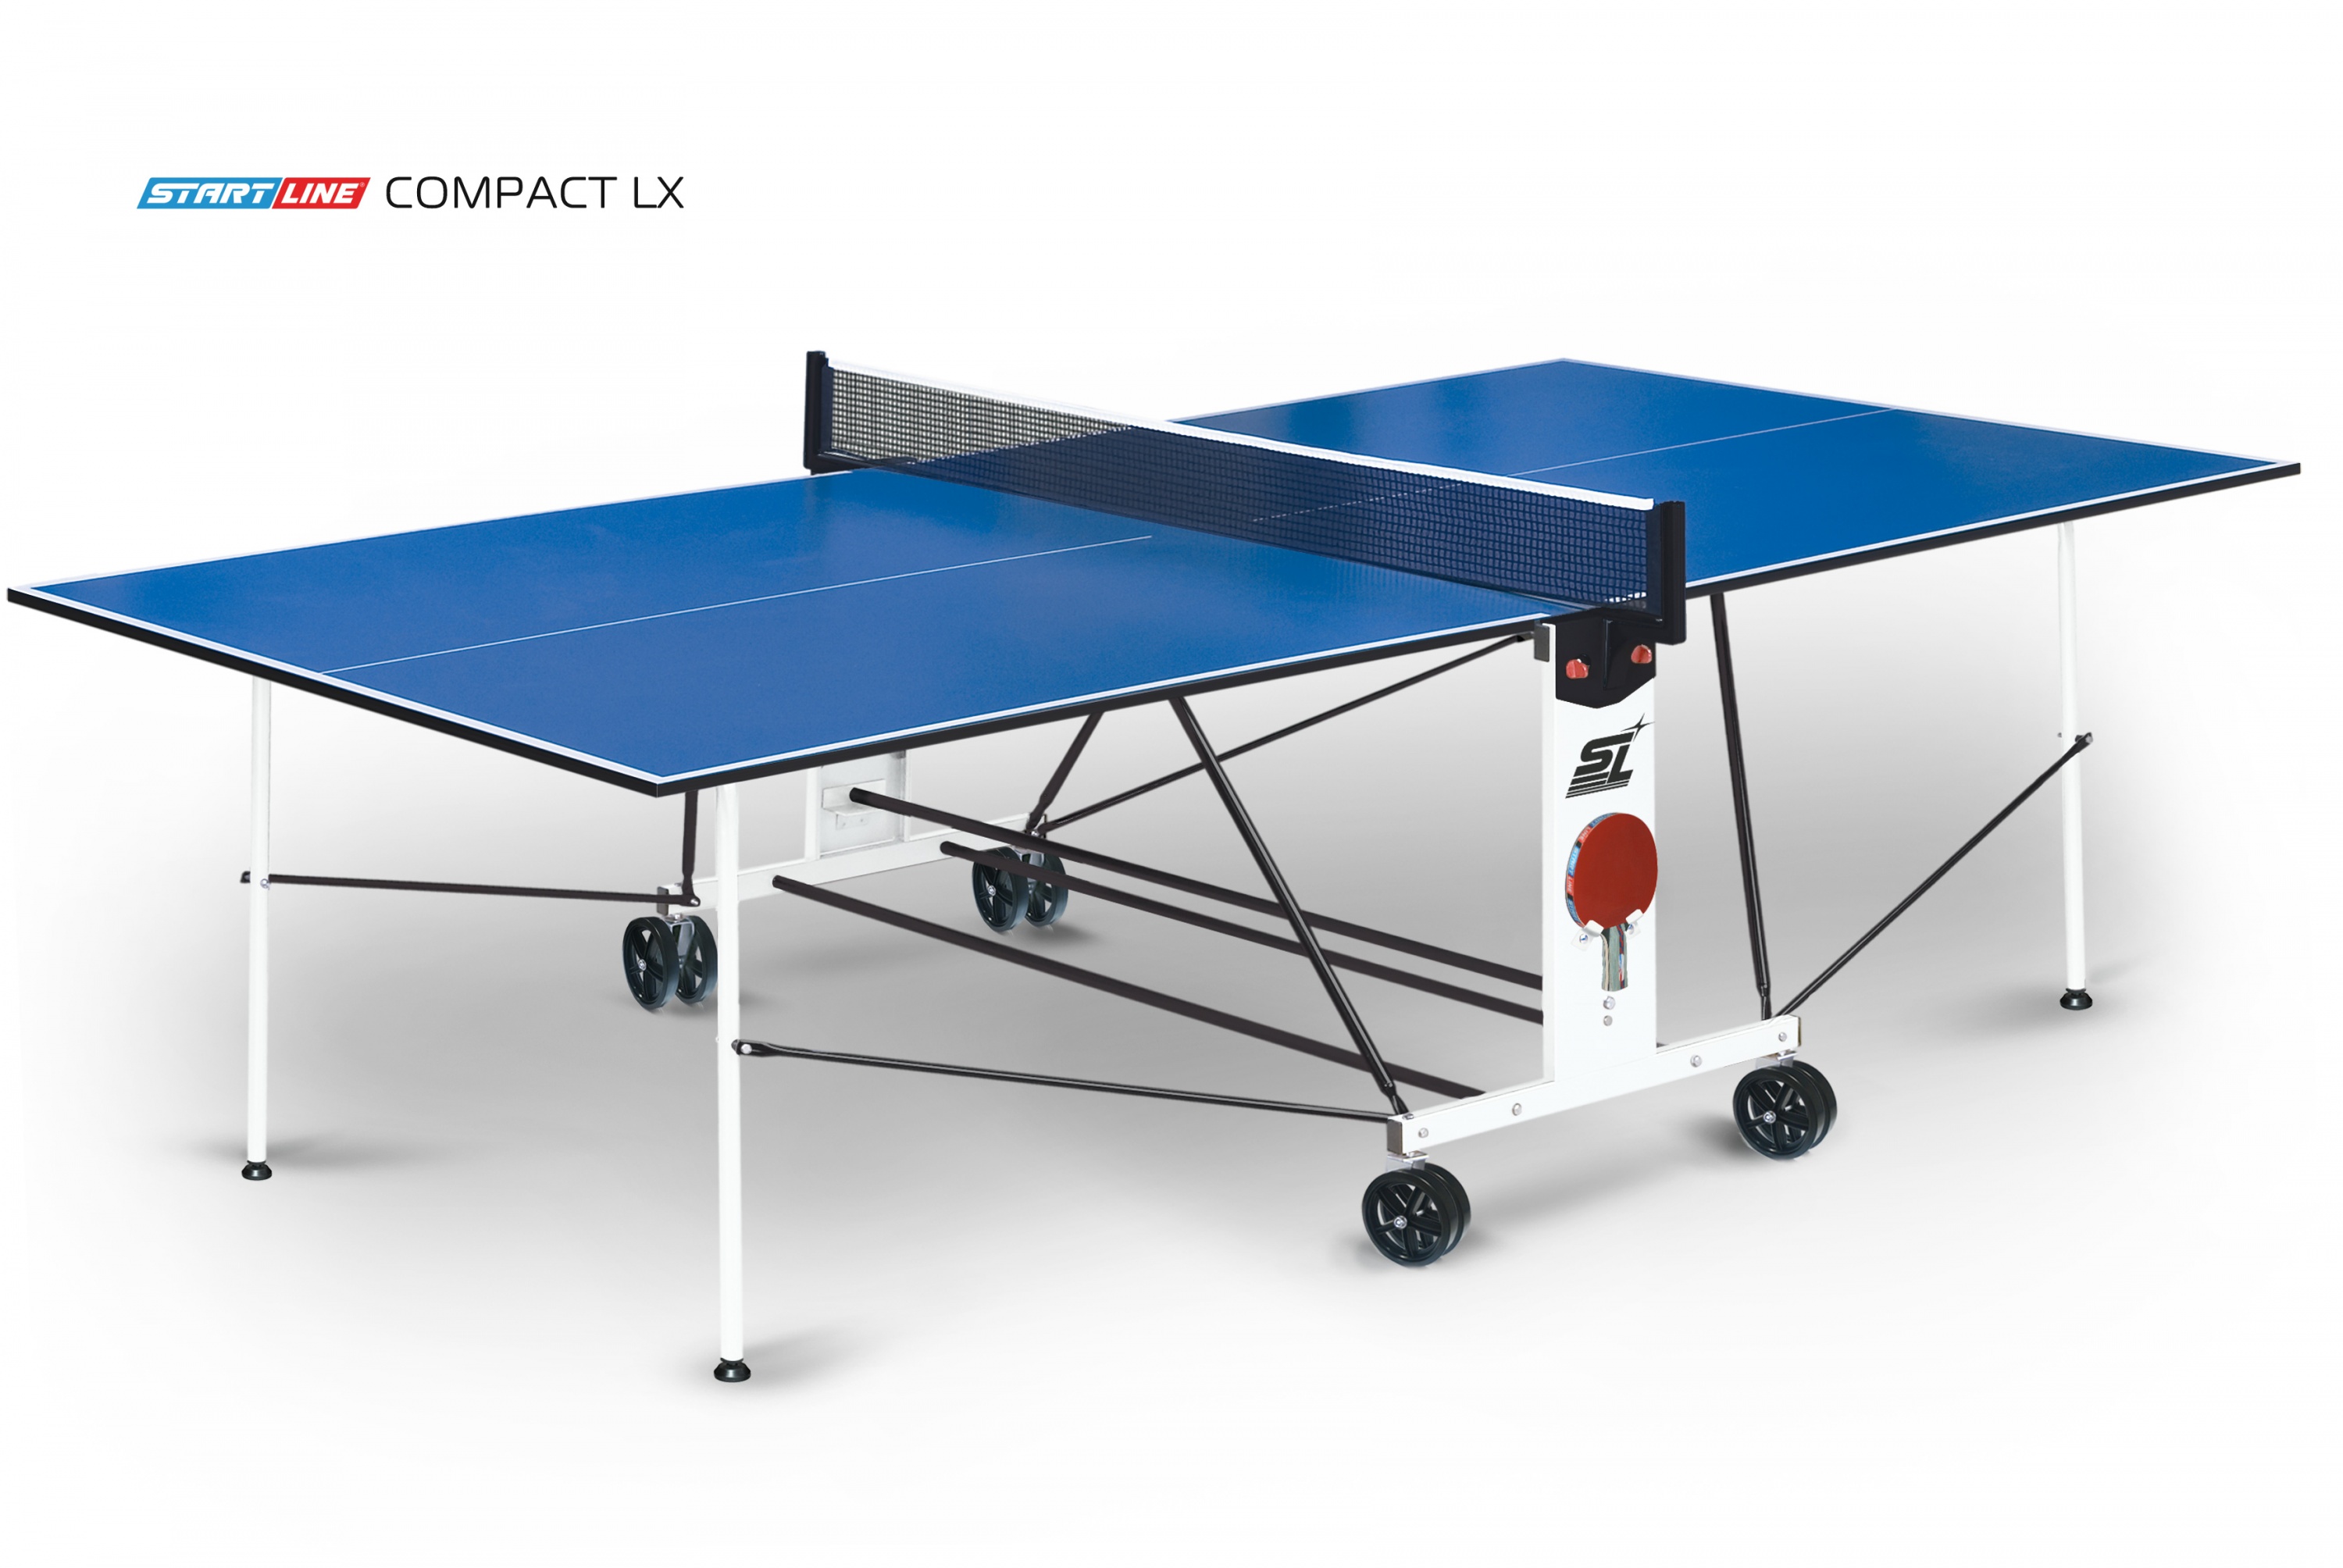 Теннисный стол Compact LX - усовершенствованная модель стола для использования в помещениях 